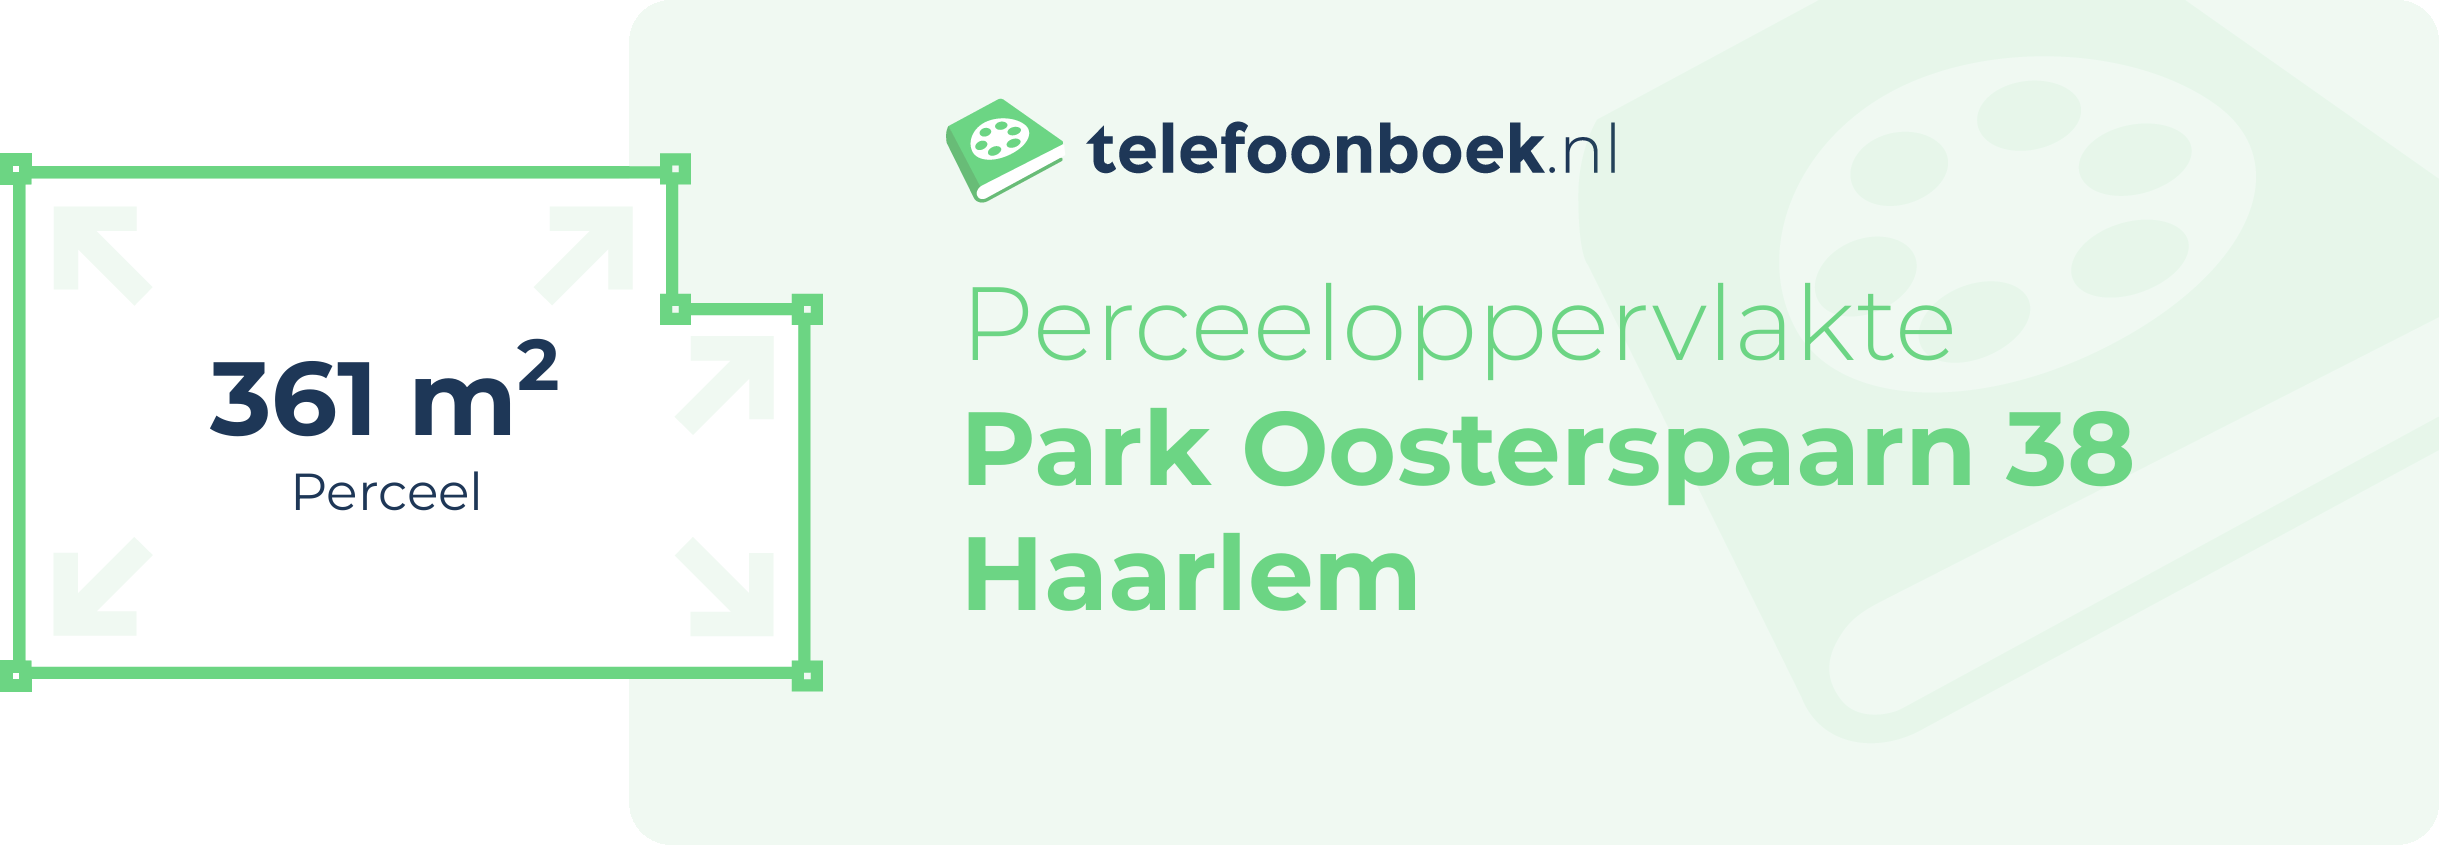 Perceeloppervlakte Park Oosterspaarn 38 Haarlem